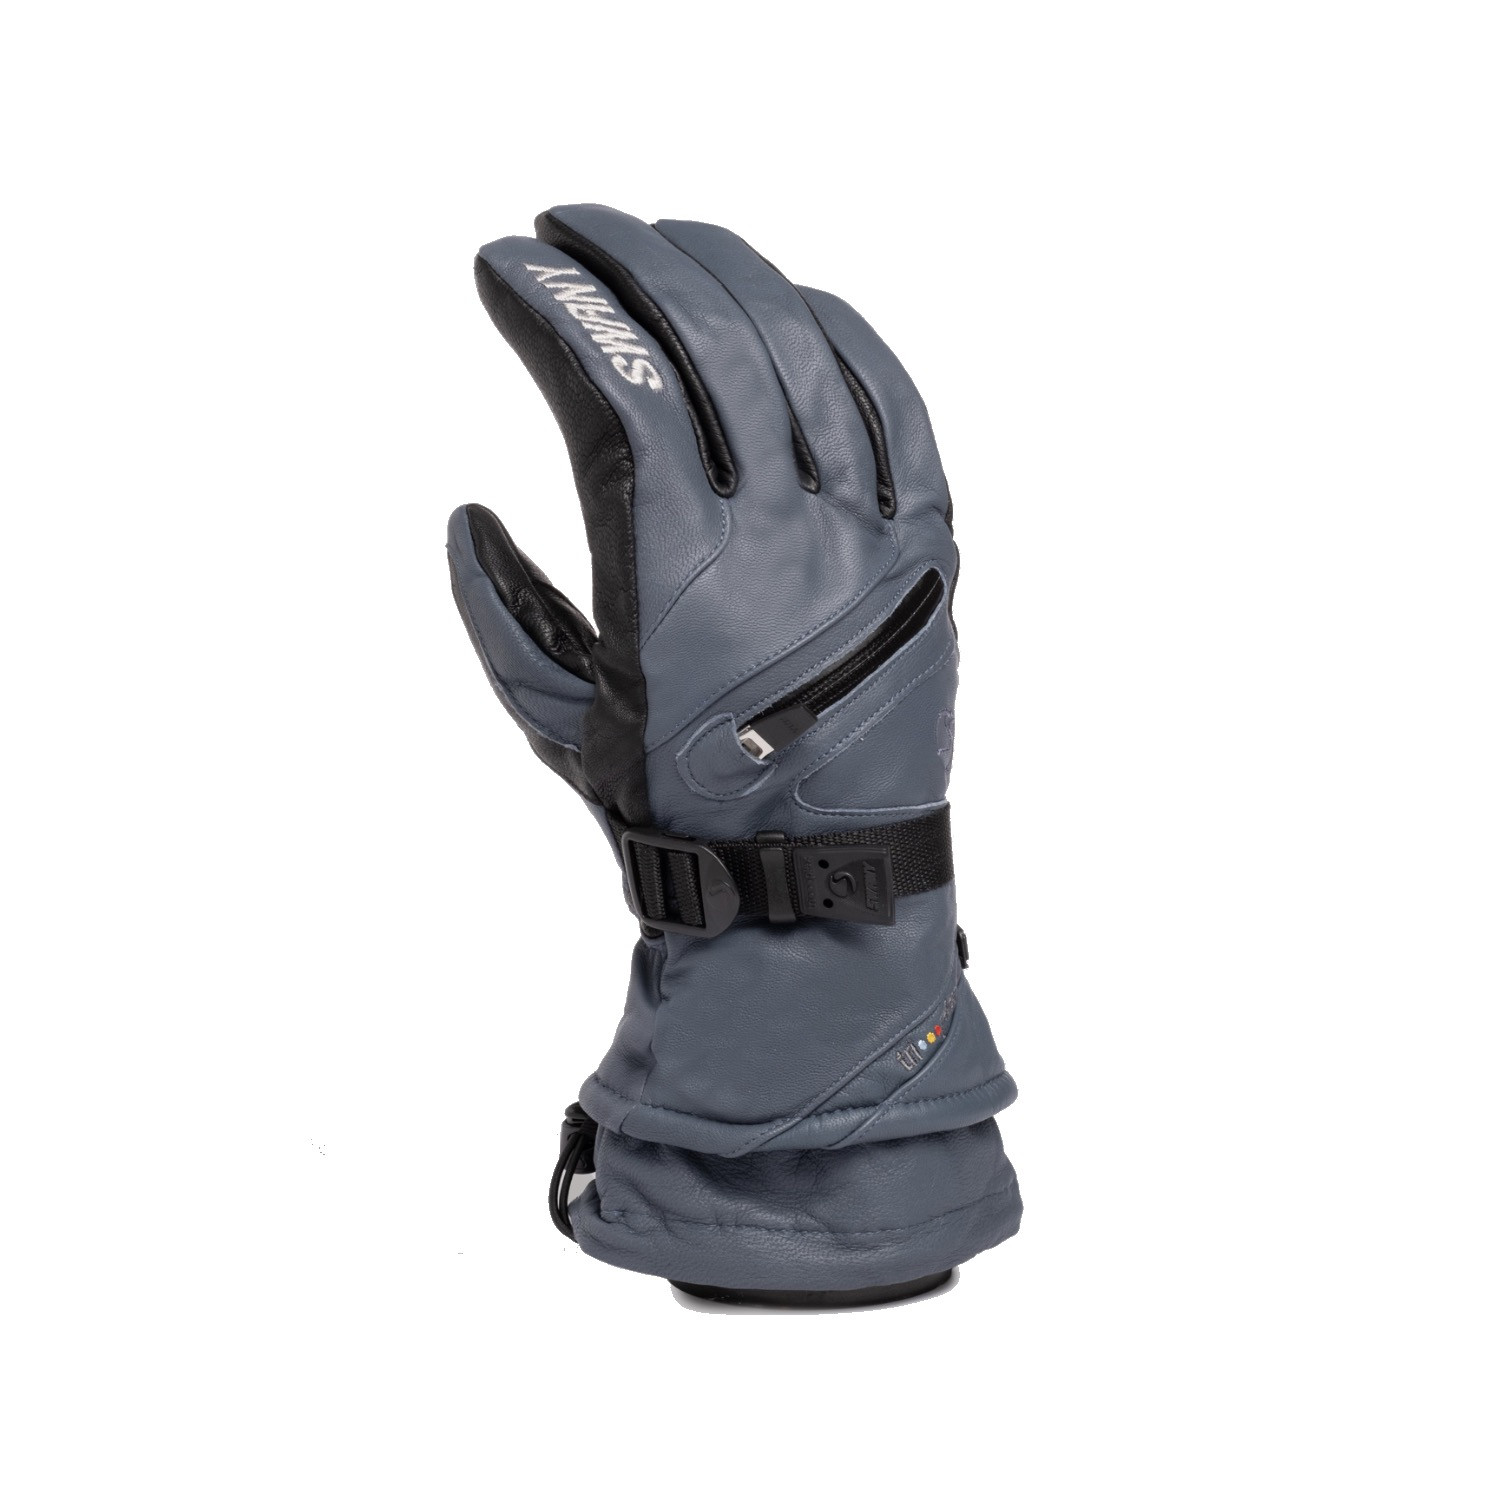 Monster Gloves | The Ski